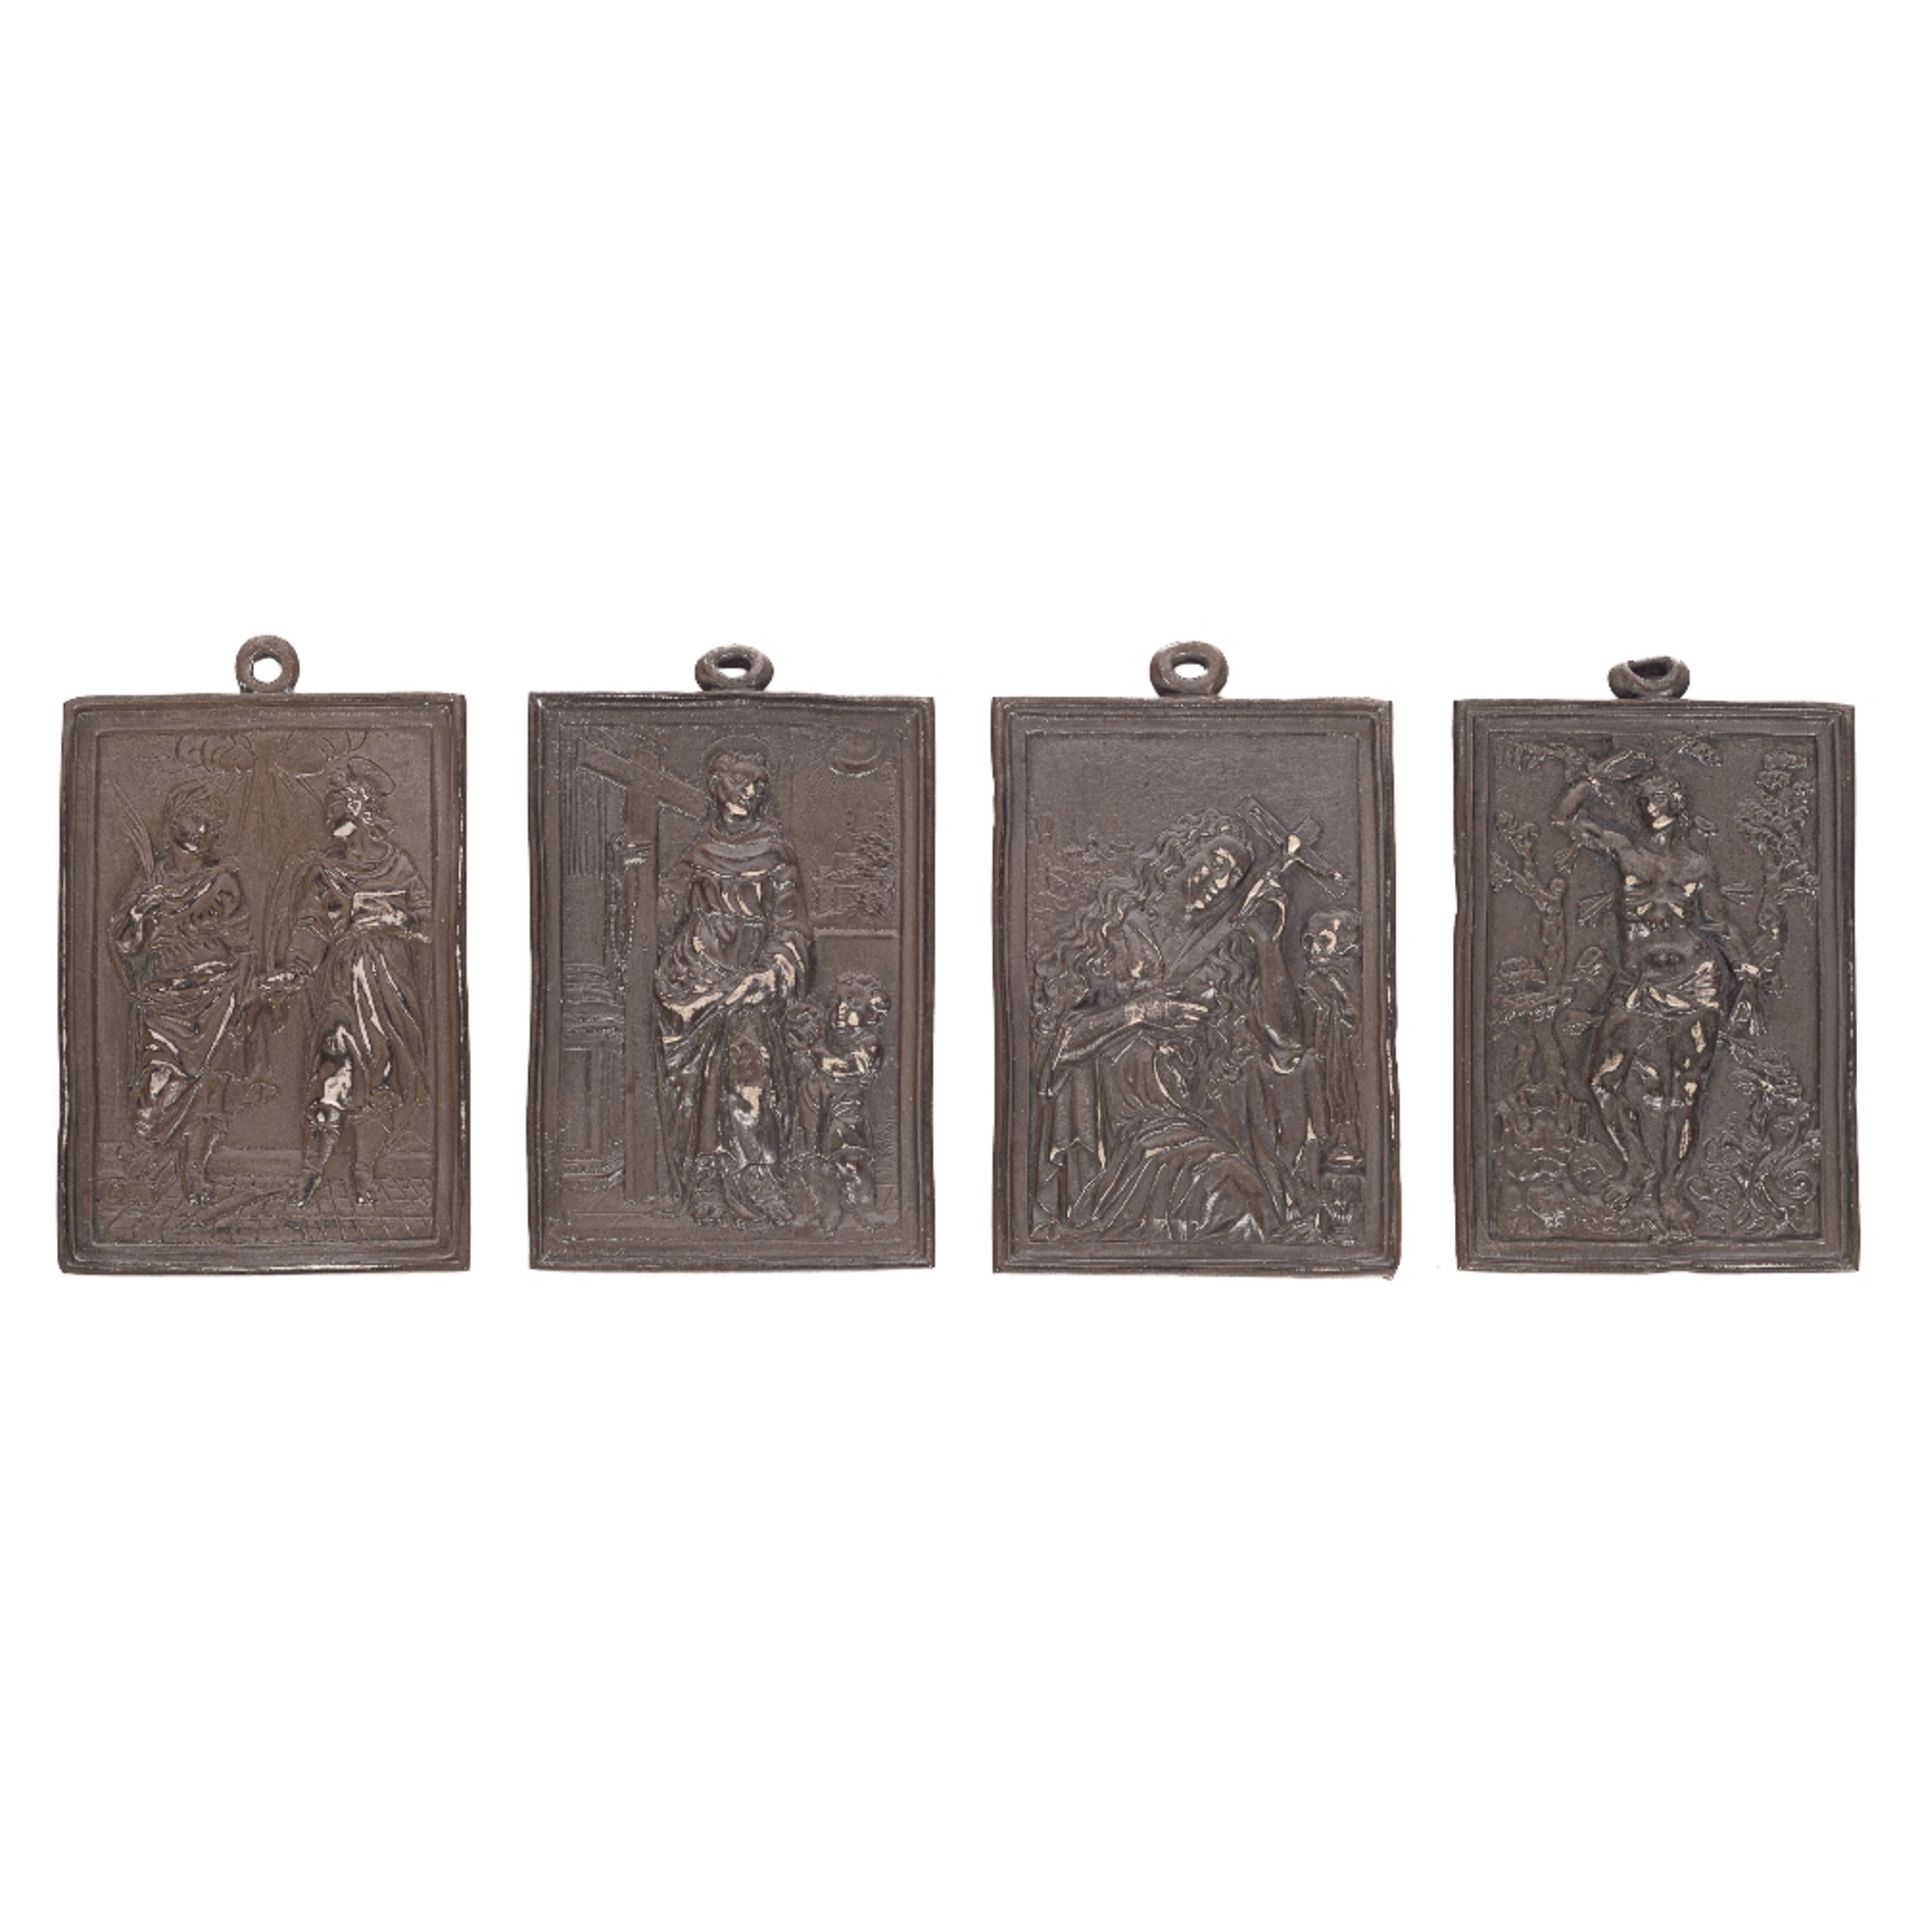 Lote de cuatro placas devocionales en plata patinada. España, s.XVIII-XIX.